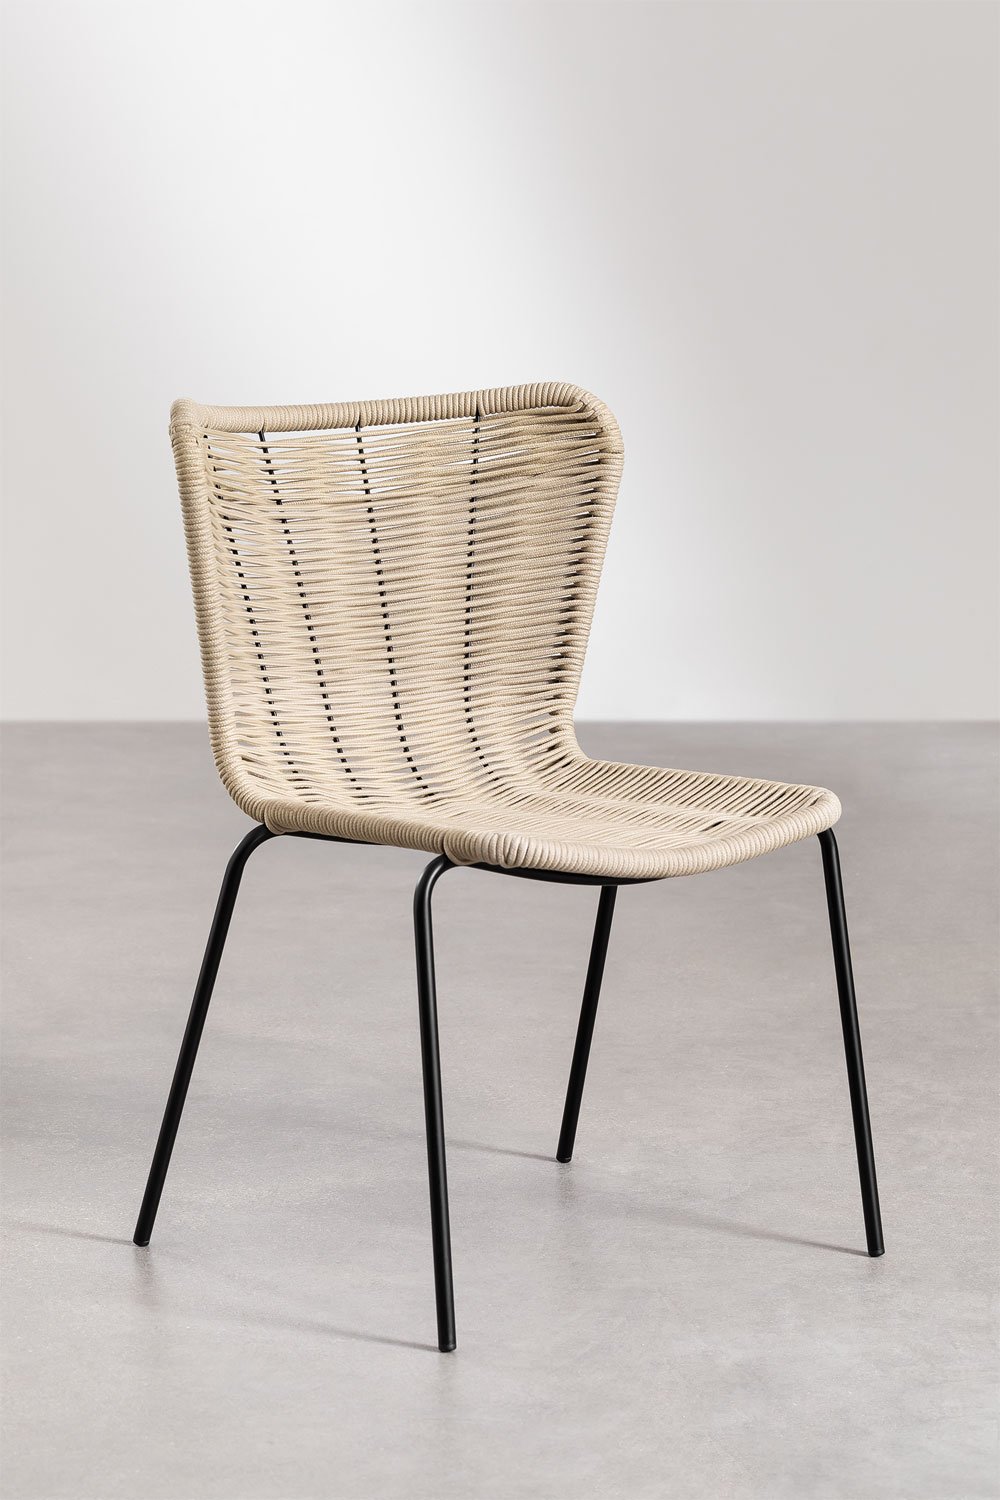 Confezione da 4 sedie da giardino impilabili Keiller, immagine della galleria 1